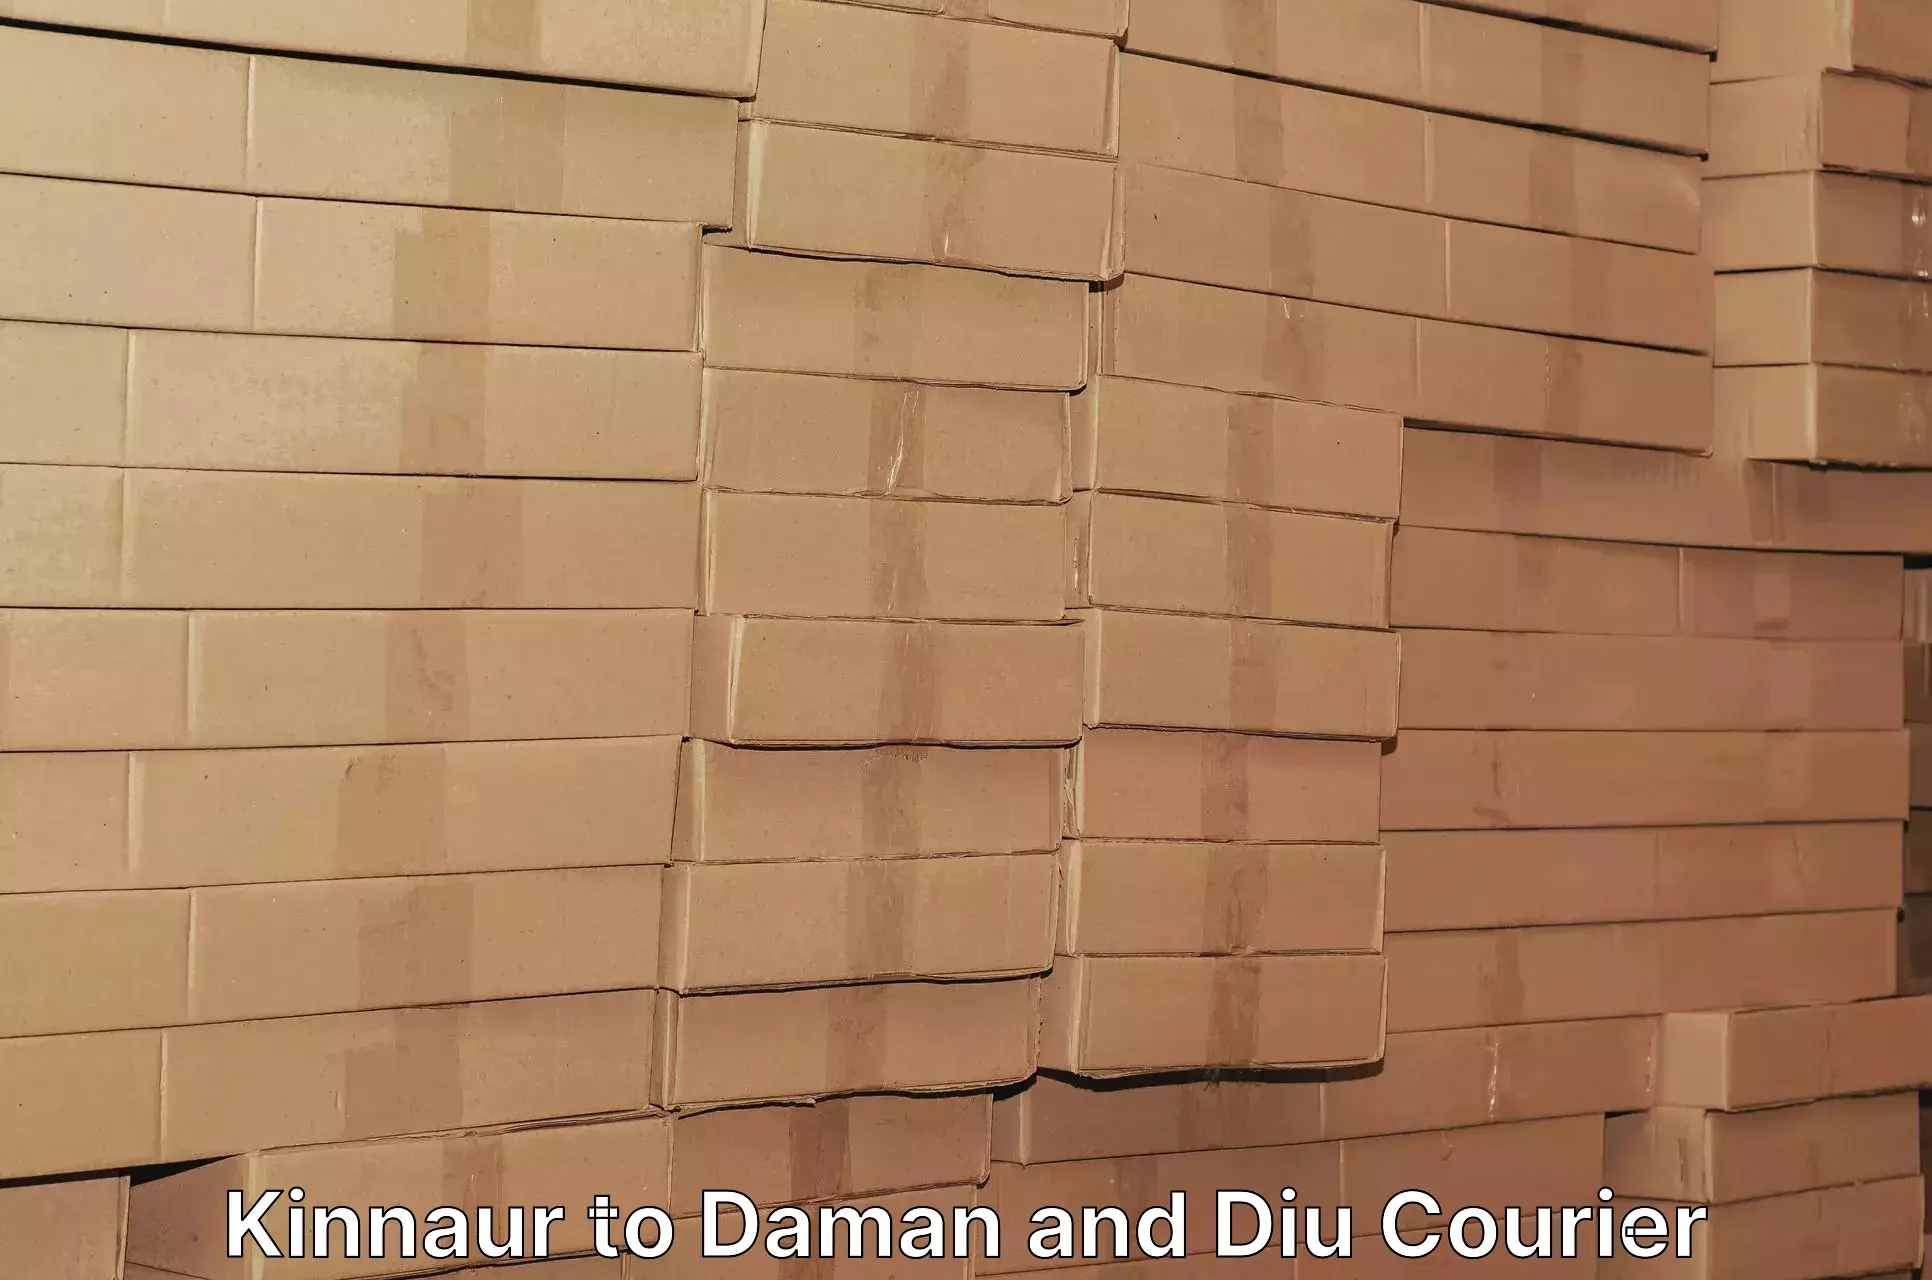 Courier service comparison in Kinnaur to Daman